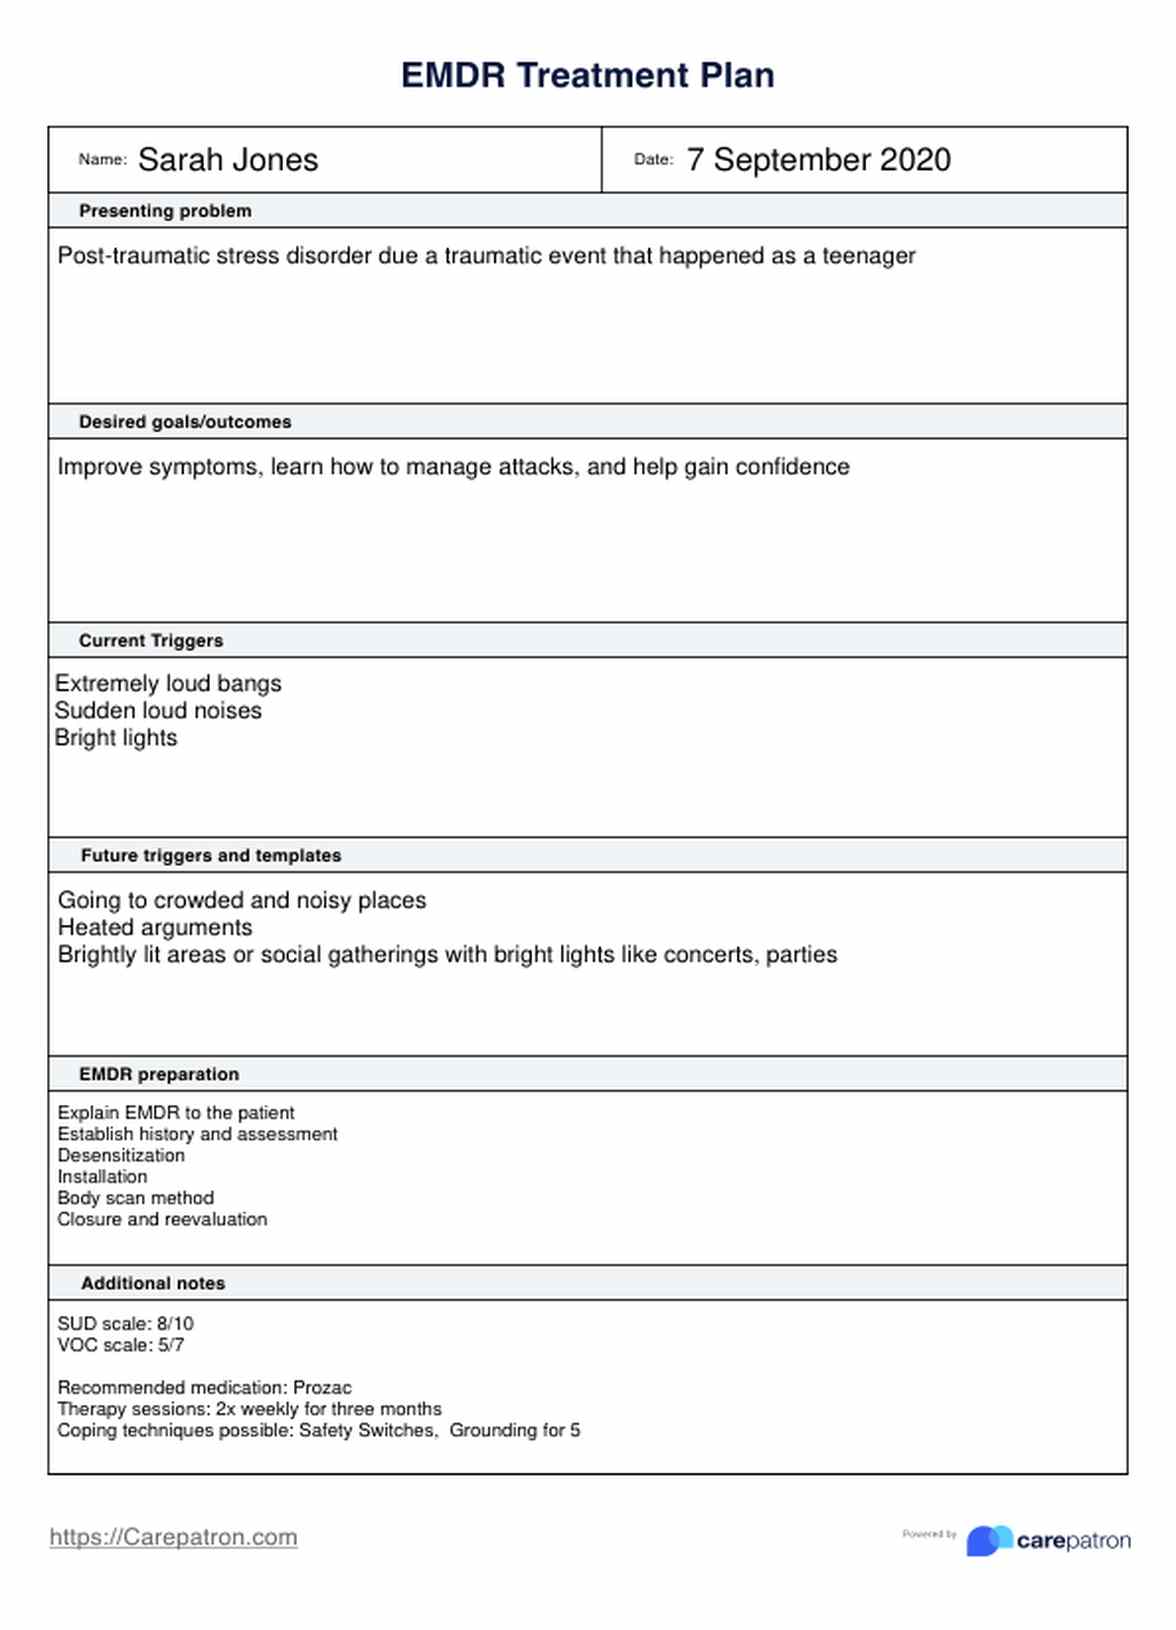 Plan de Tratamiento de EMDR (Desensibilización y Reprocesamiento por Movimientos Oculares) PDF Example